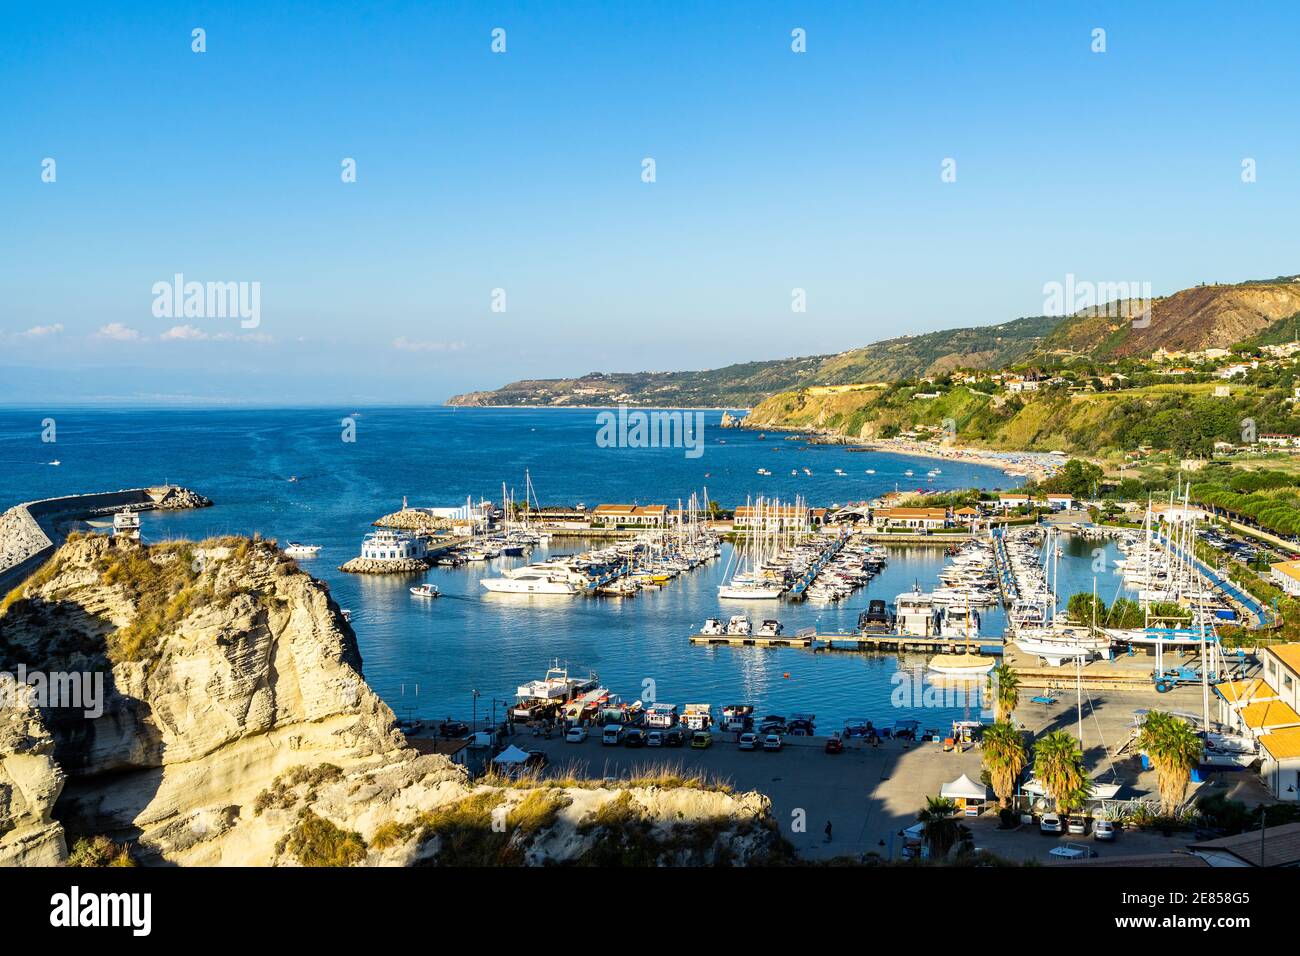 El puerto de Tropea durante el verano. Tropea es la ciudad turística costera más famosa de la región de Calabria, al sur de Italia Foto de stock